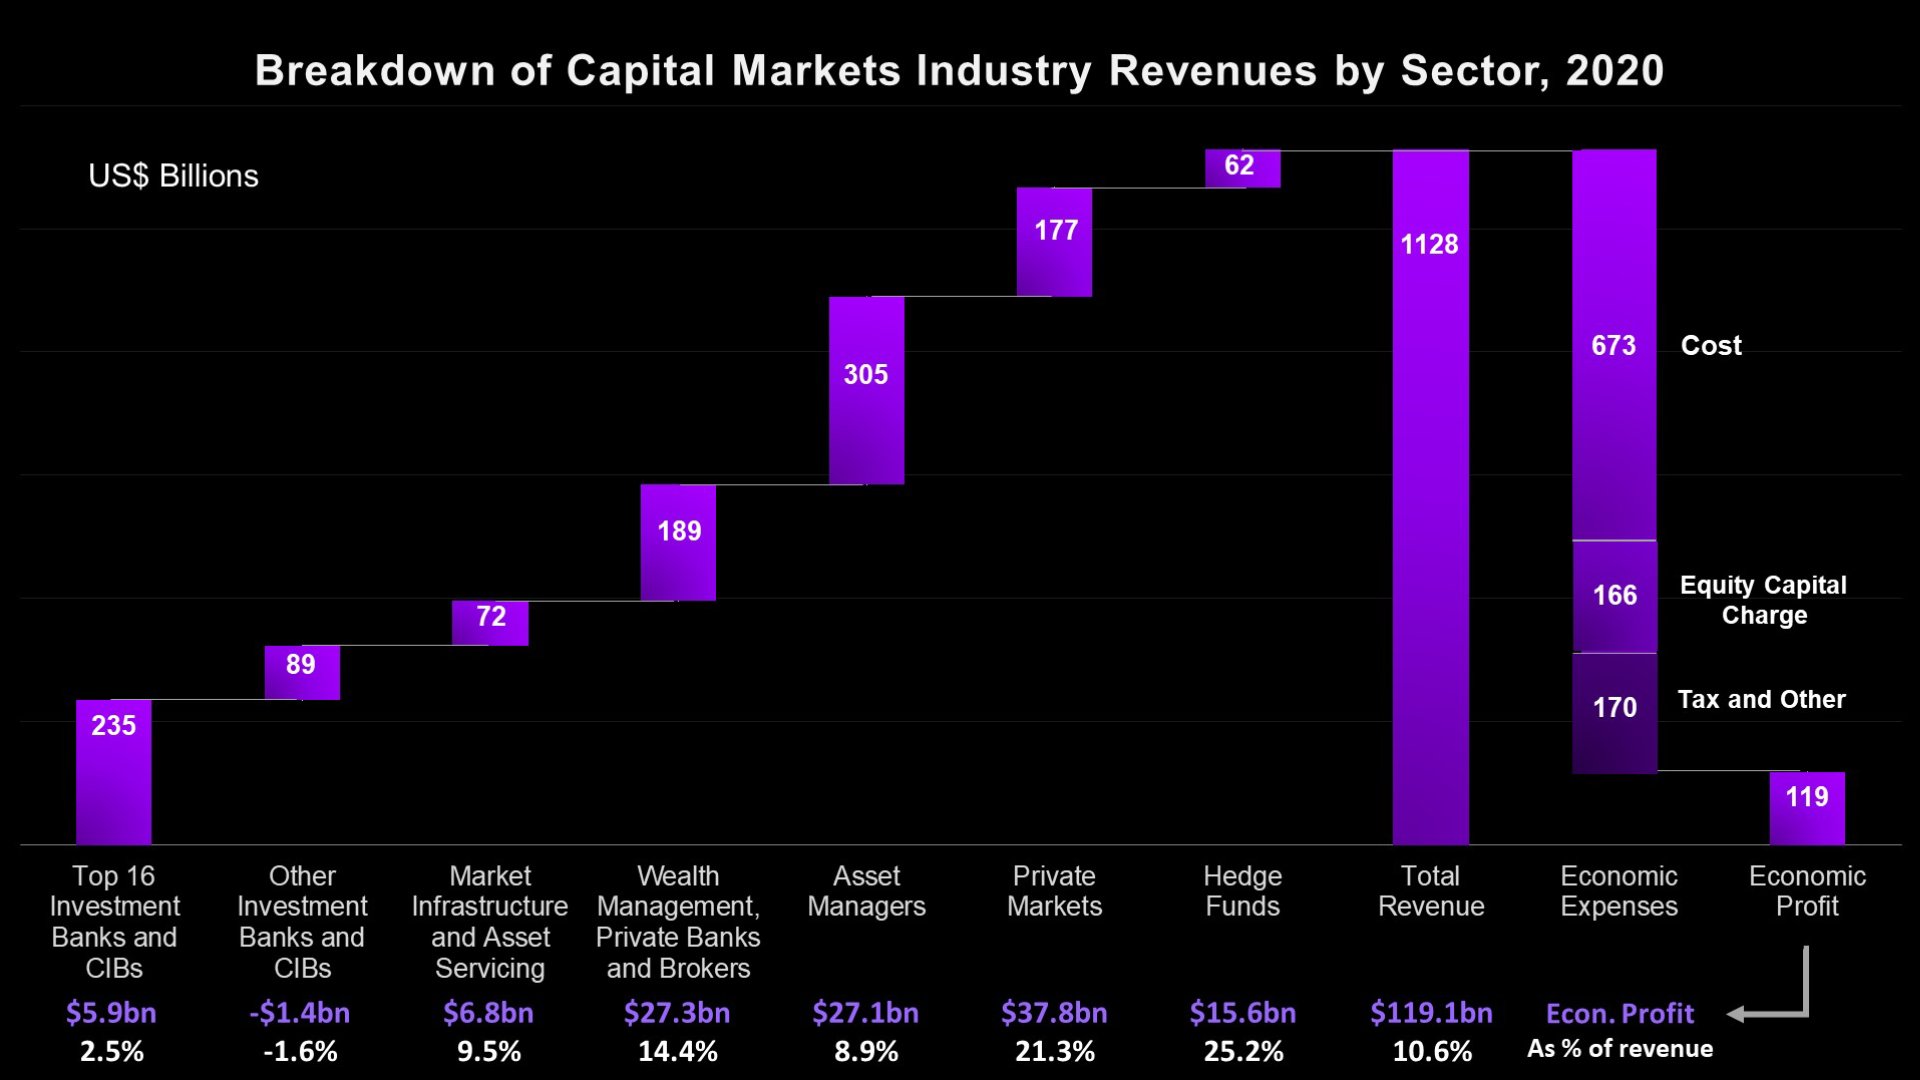 Breakdown of Capital Markets Industry Revenue by Sector